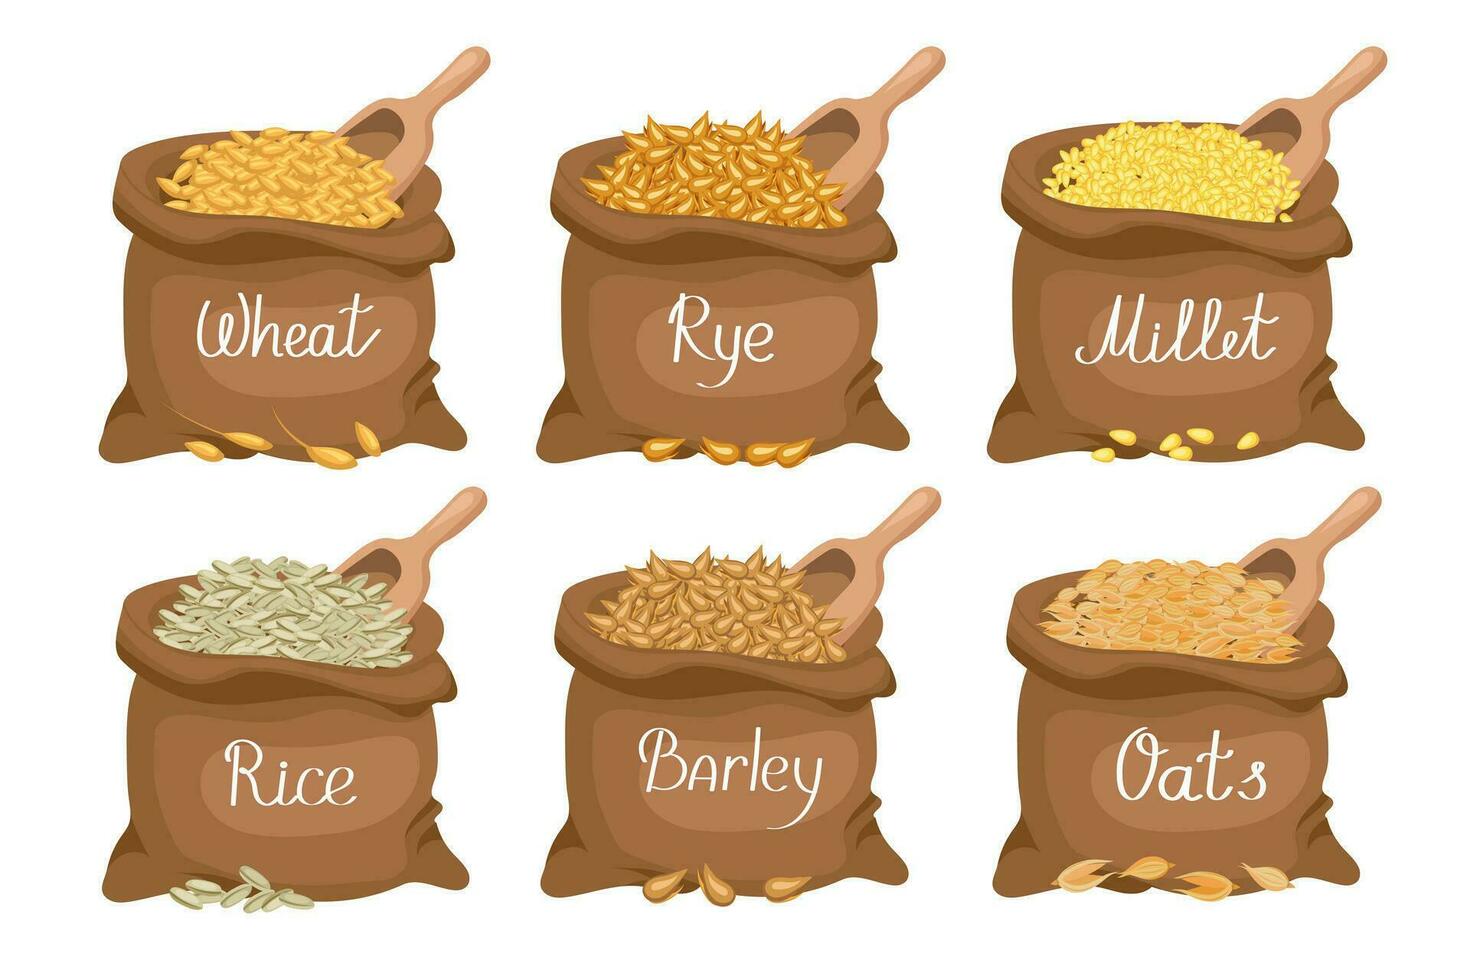 céréales ensemble. lin Sacs avec céréales blé, seigle, avoine, riz, orge, Millet. récolte, agriculture. illustration, vecteur